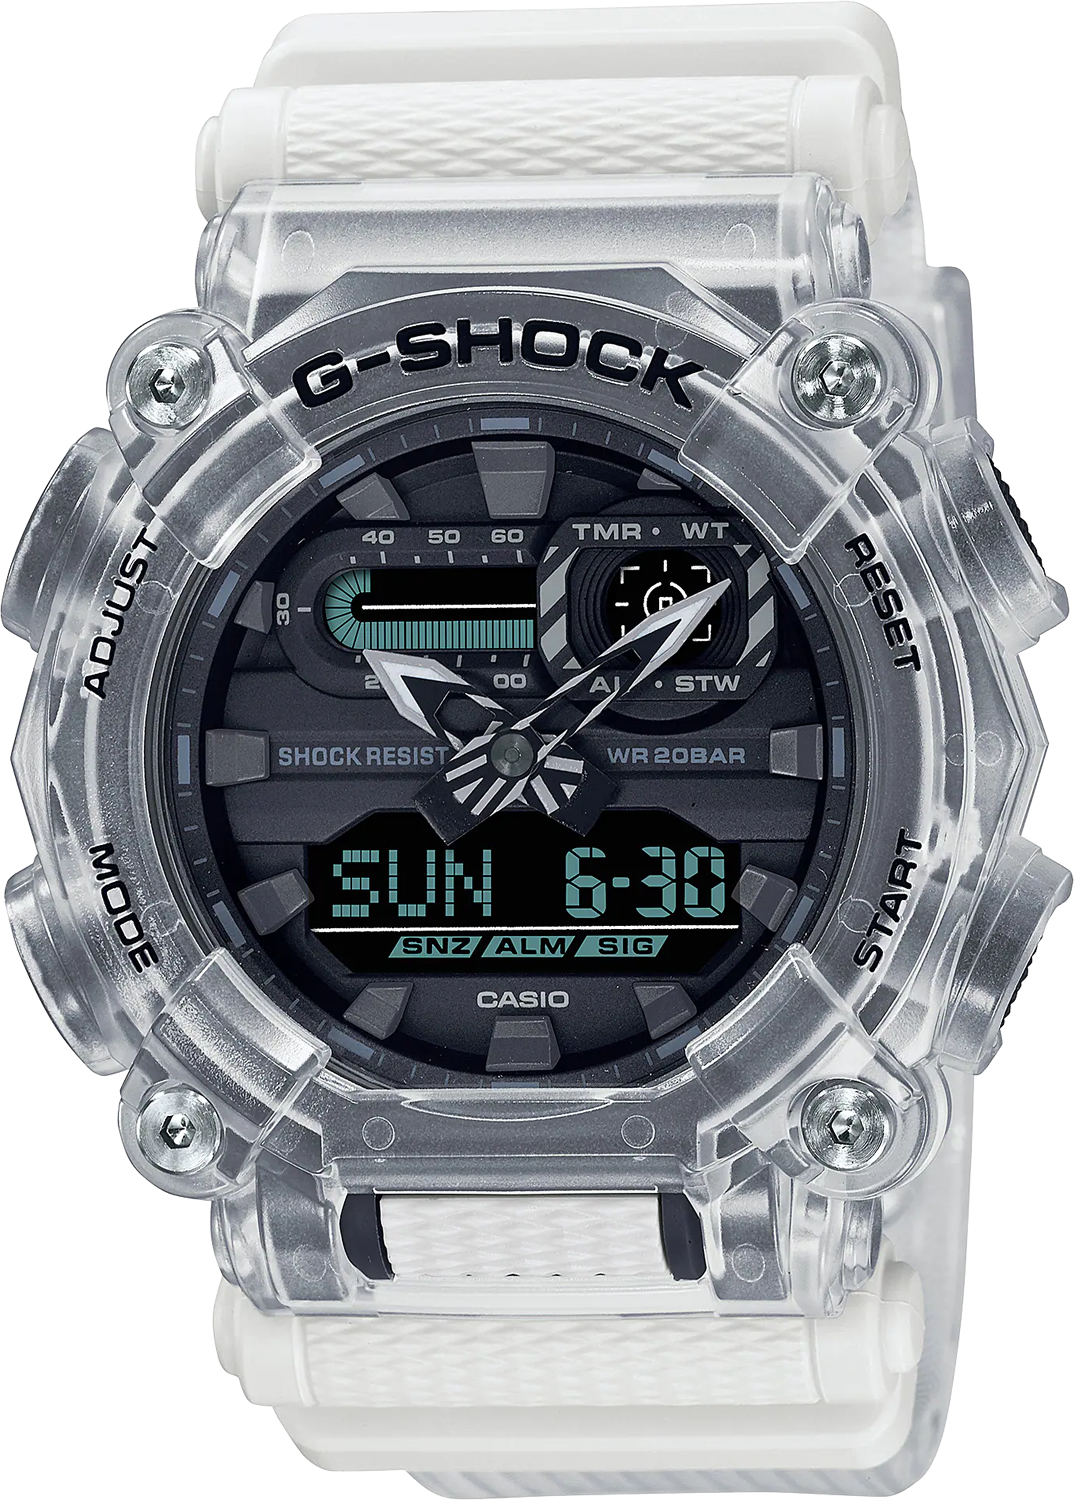 Наручные часы Casio GA-900SKL-7A наручные часы casio ga 900skl 7a бесцветный